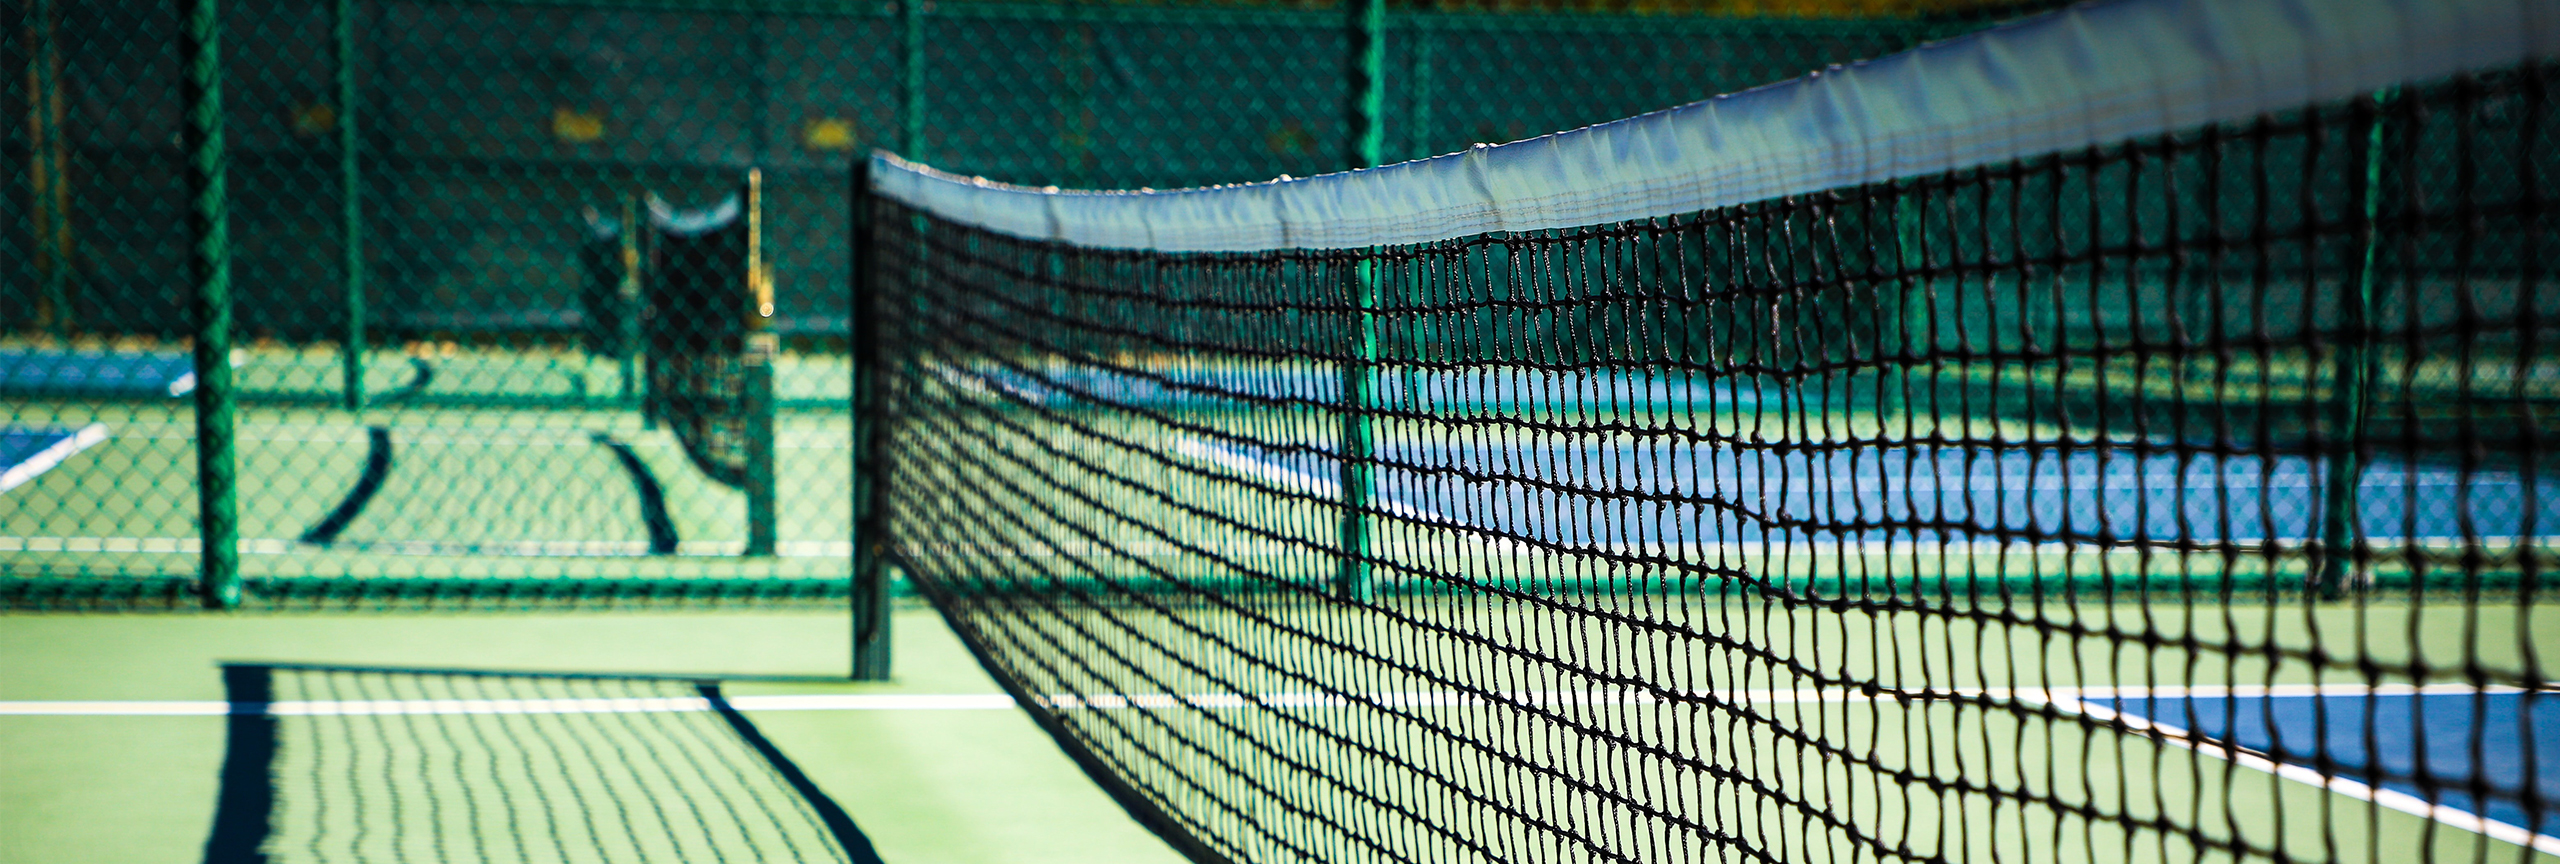 Closeup of tennis net.